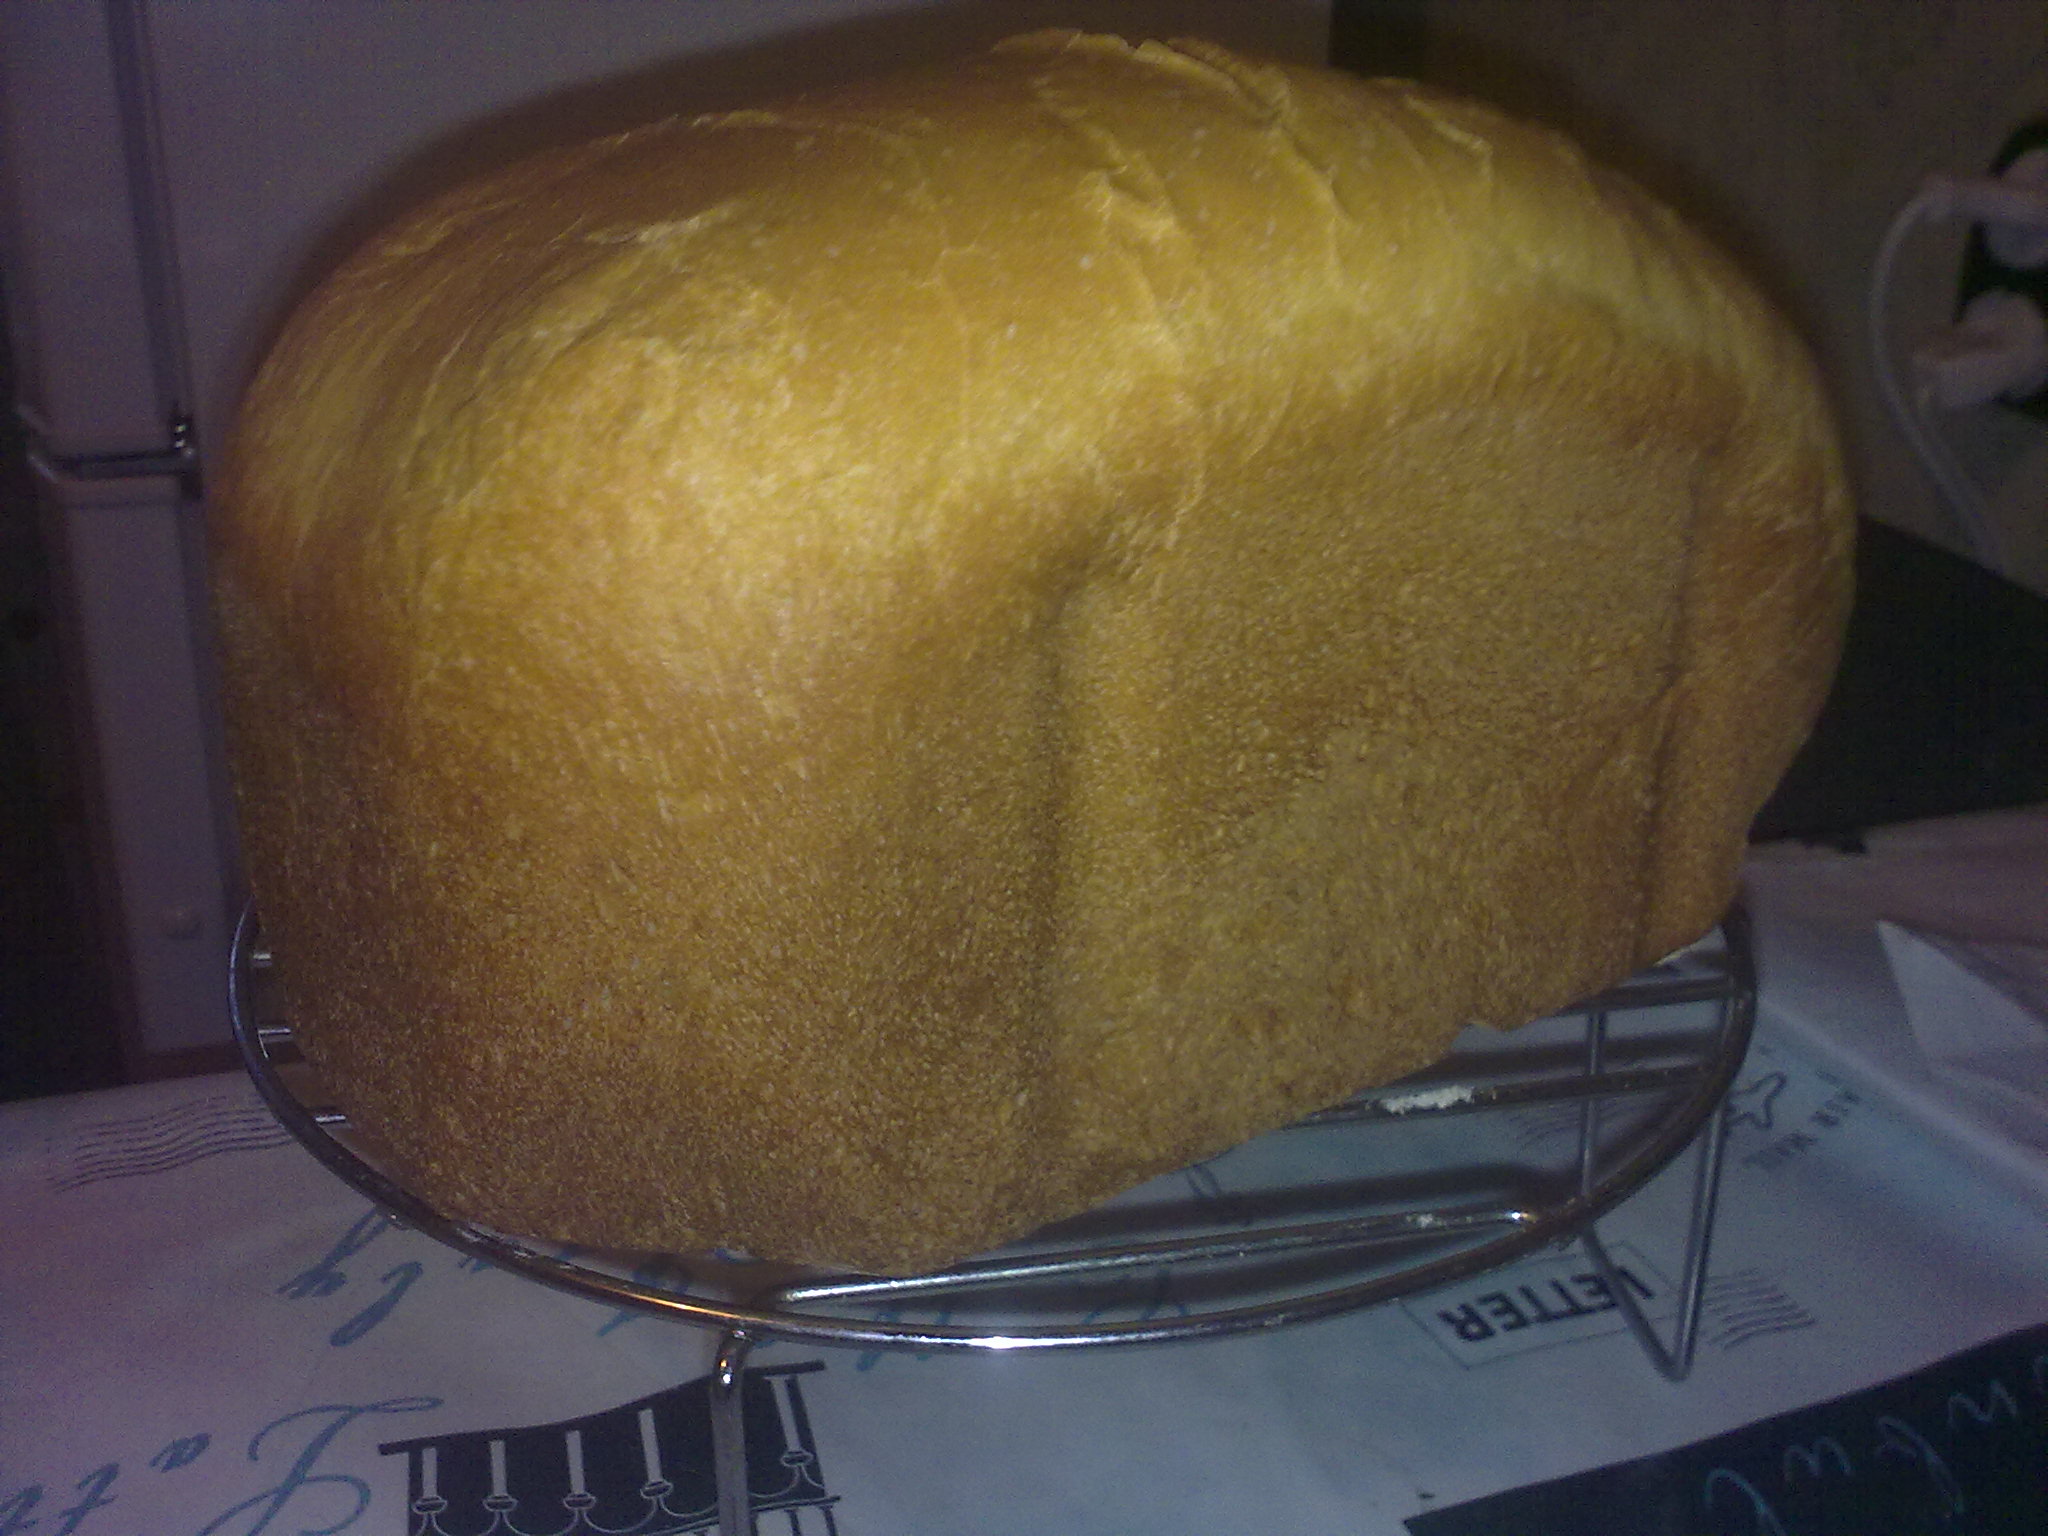 Najłatwiejszy biały chleb z mąki pszennej